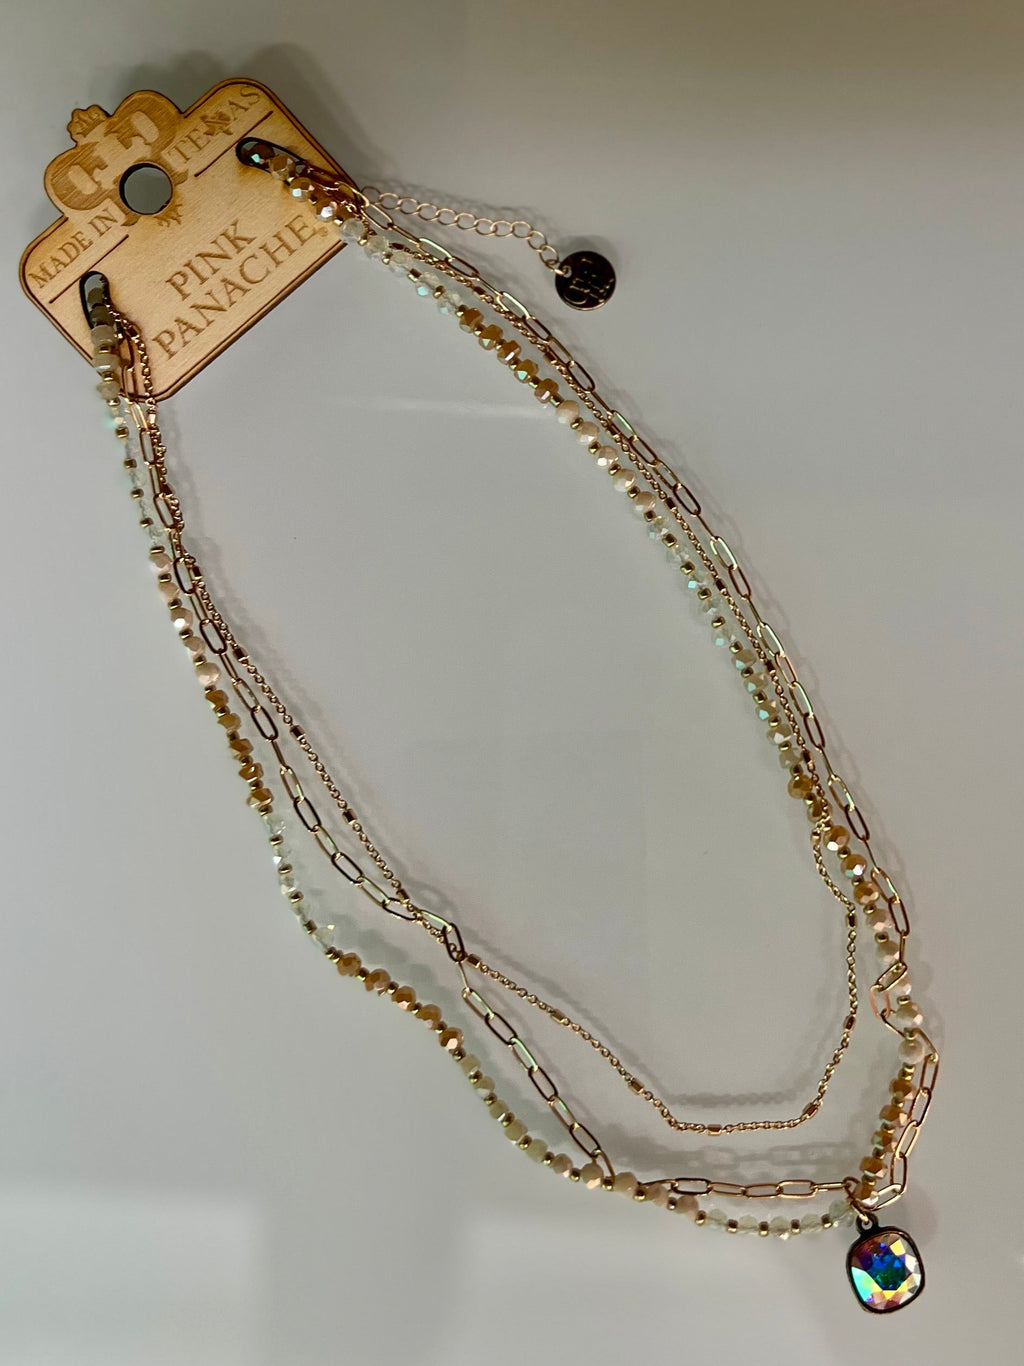 Golden Cluster Panache Necklace | gussieduponline